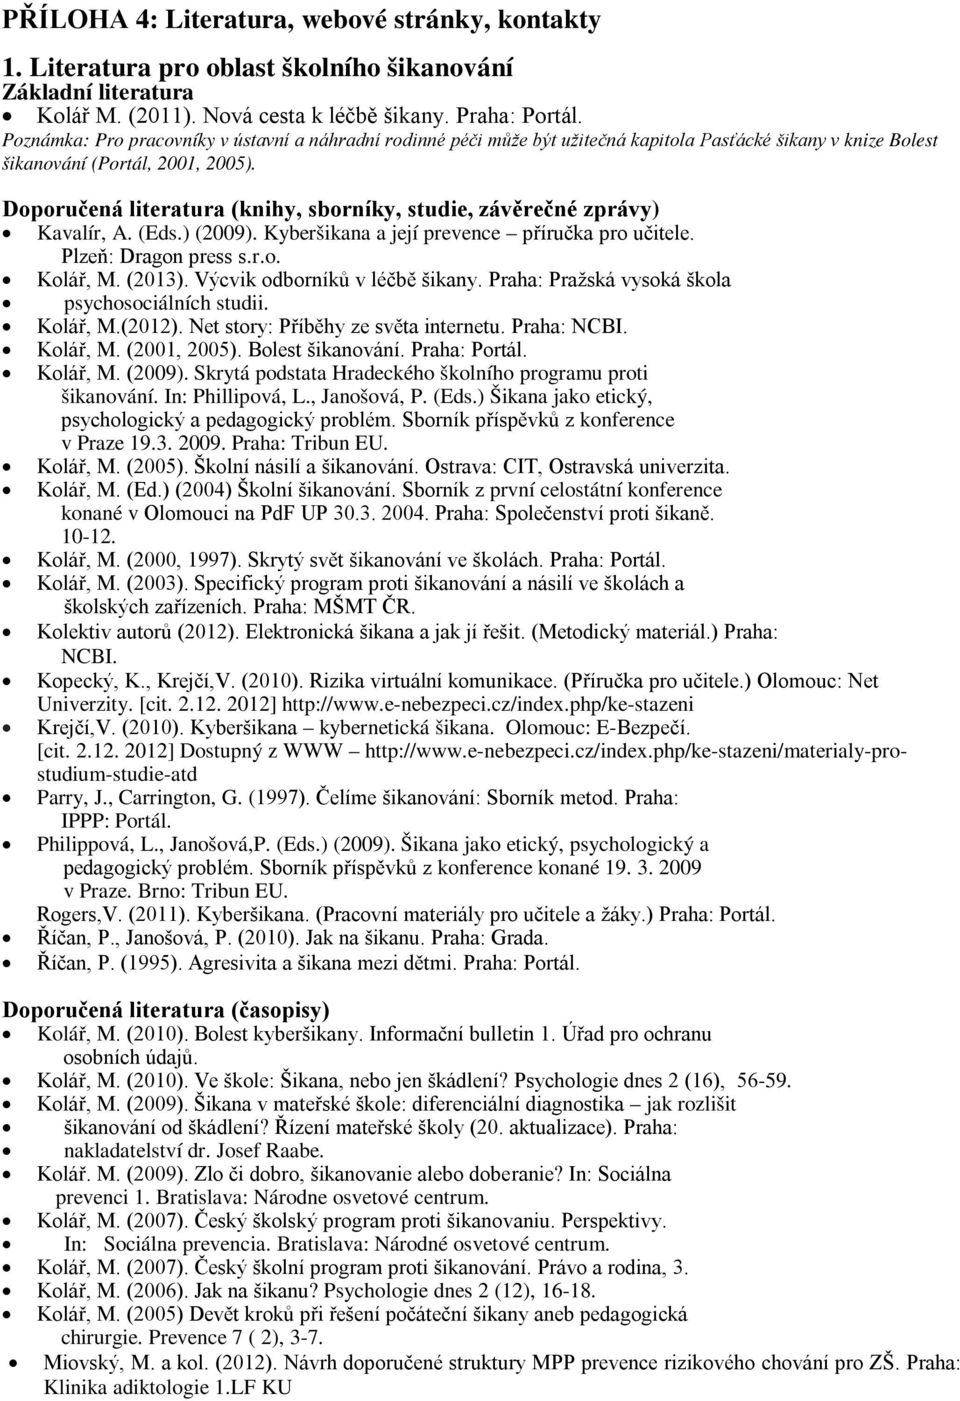 Doporučená literatura (knihy, sborníky, studie, závěrečné zprávy) Kavalír, A. (Eds.) (2009). Kyberšikana a její prevence příručka pro učitele. Plzeň: Dragon press s.r.o. Kolář, M. (2013).